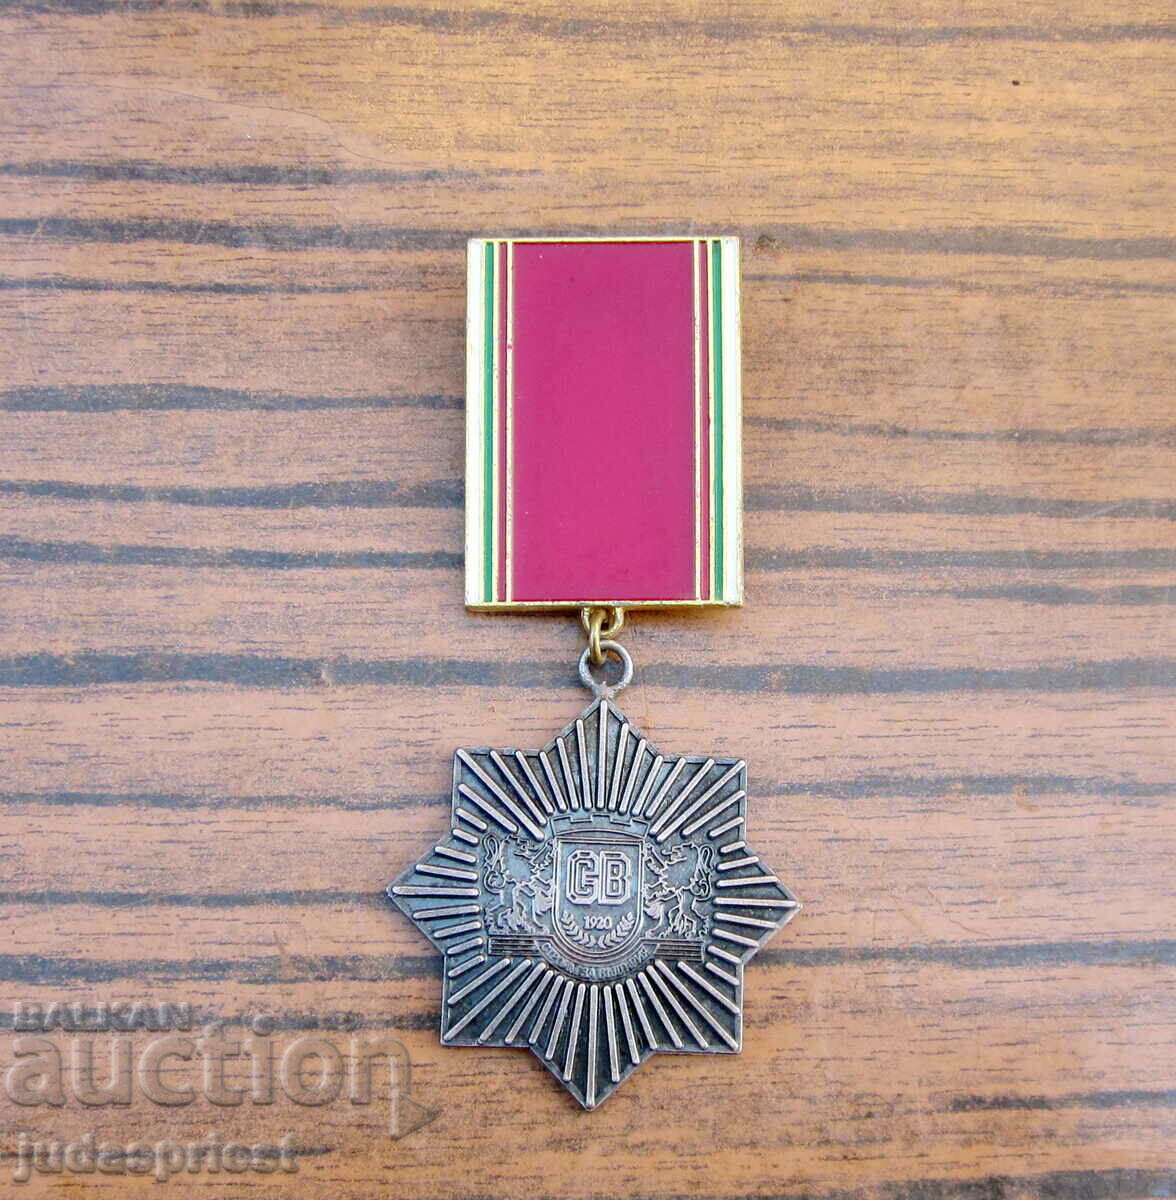 Български военен медал СВ за заслуги строителни войски